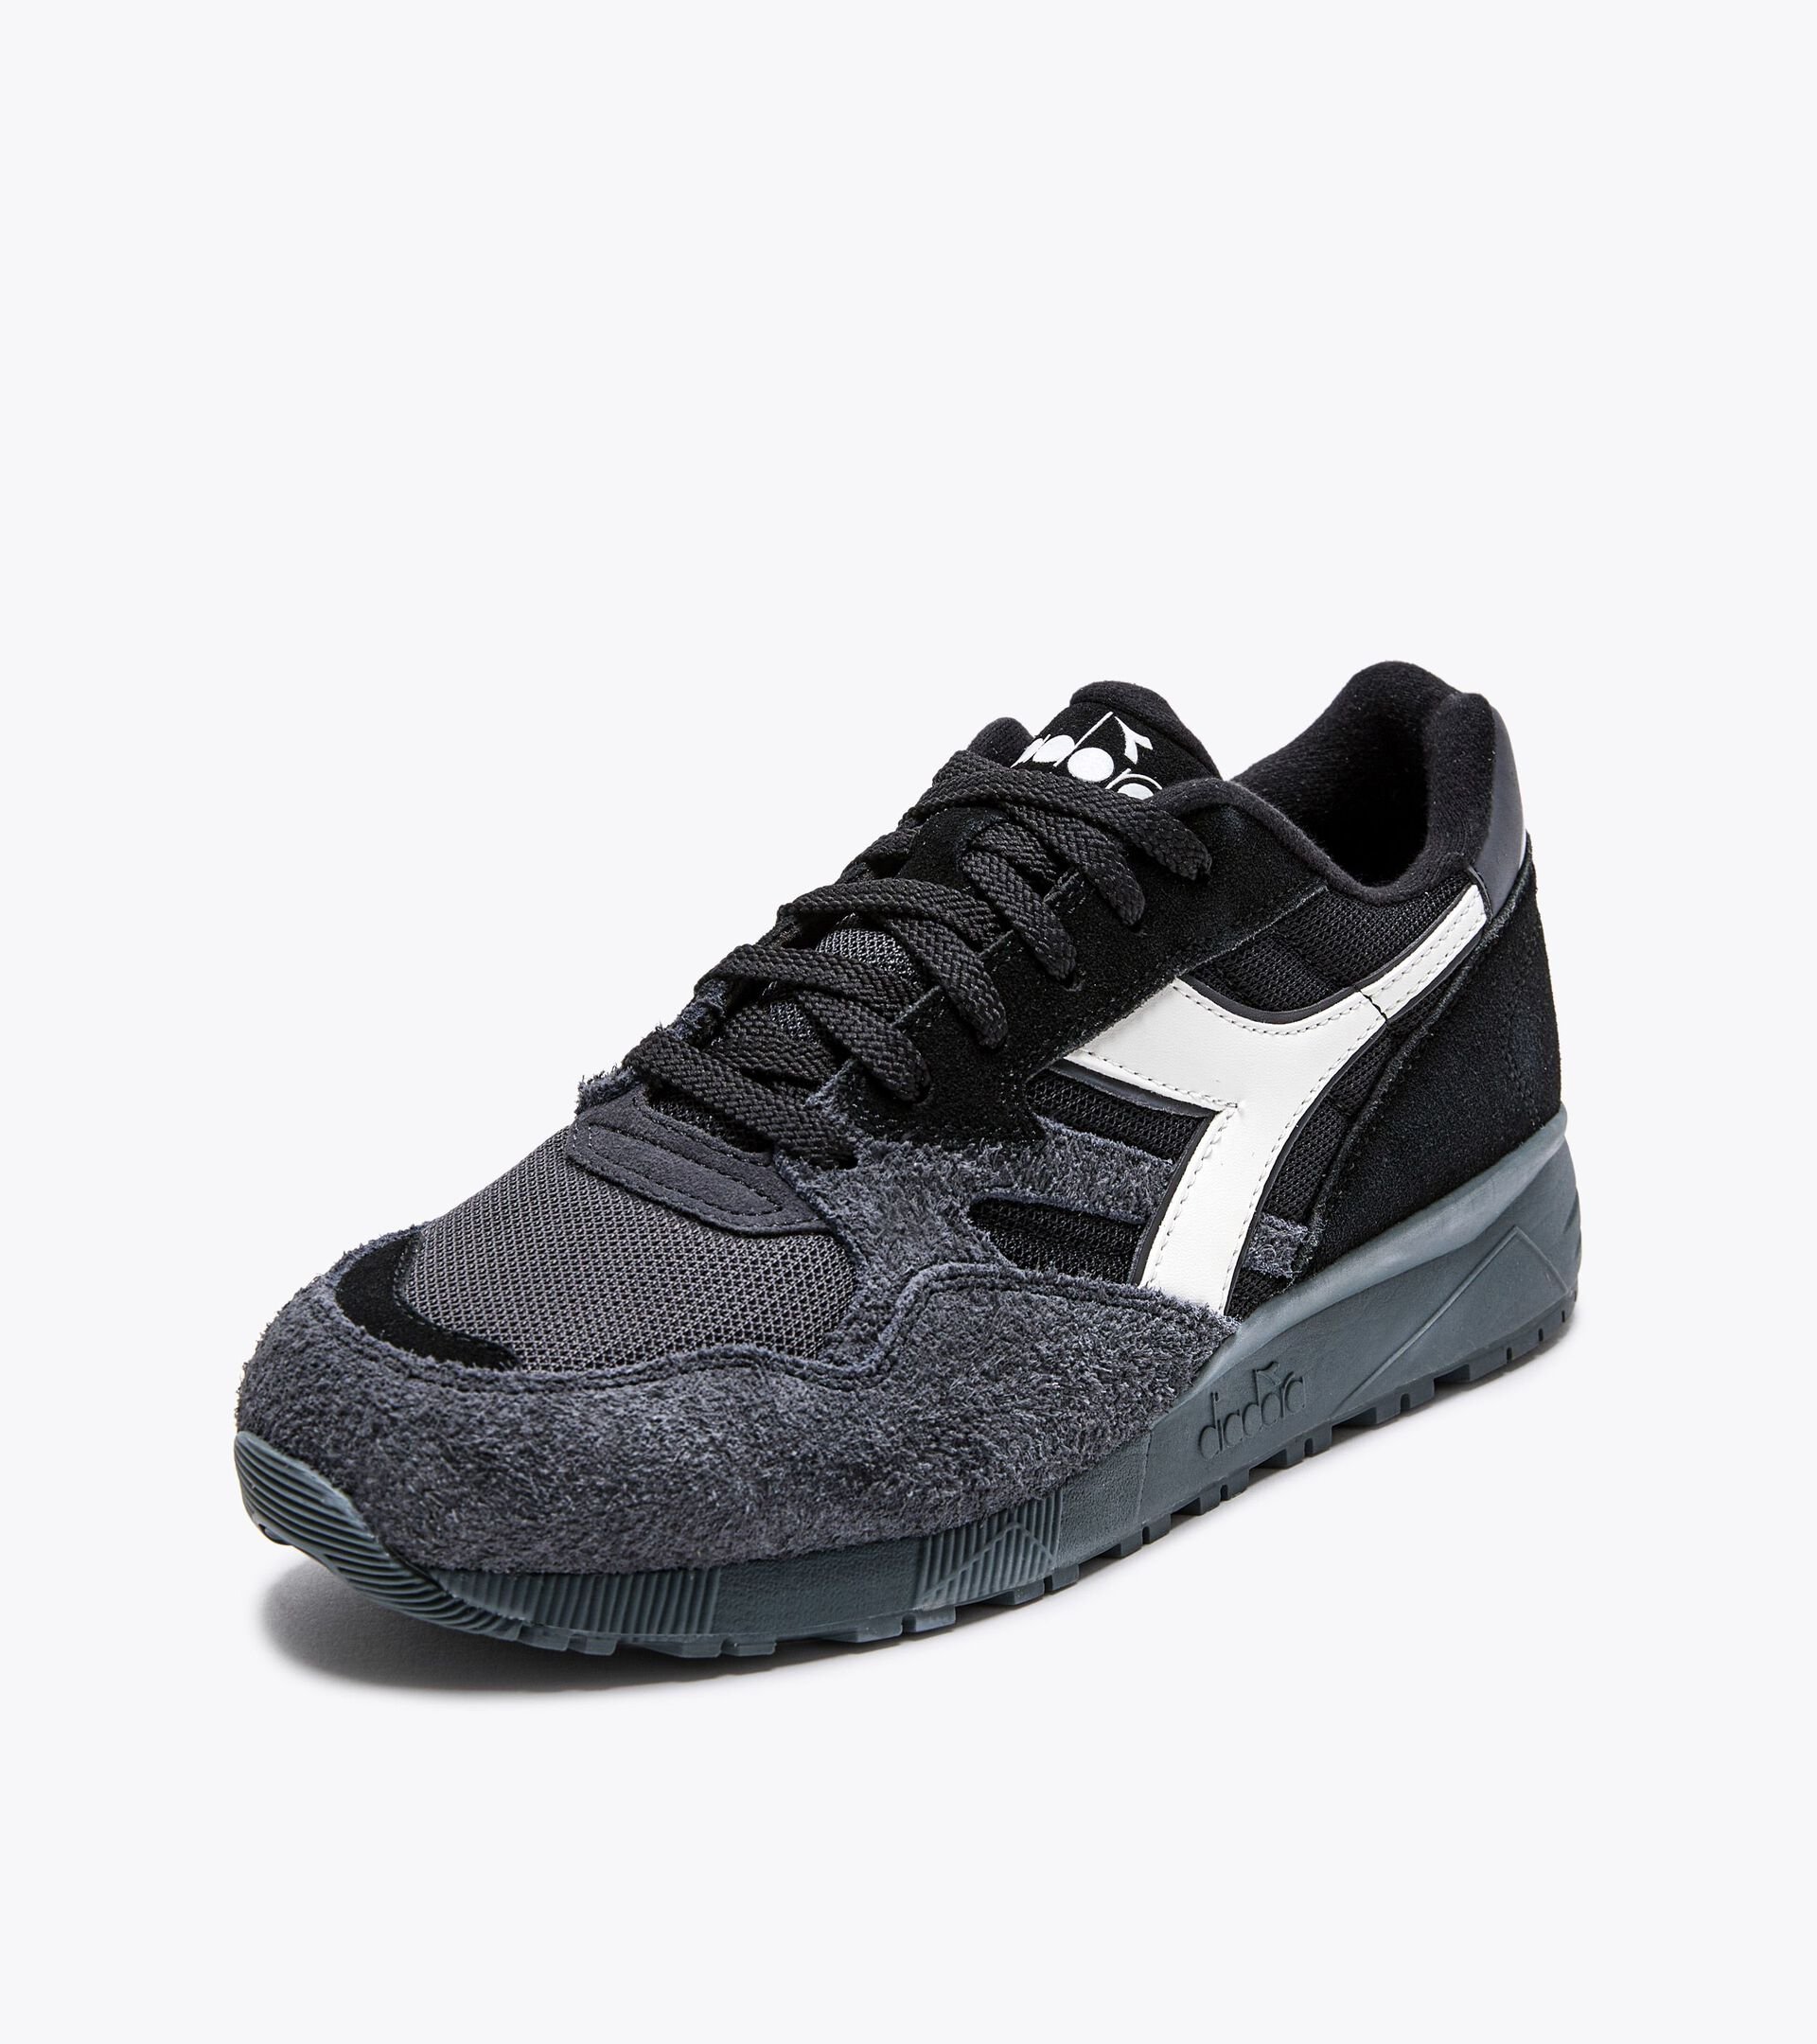 Sporty sneakers - Gender neutral N902 HAIRY SUEDE BLACK/BLACK - Diadora